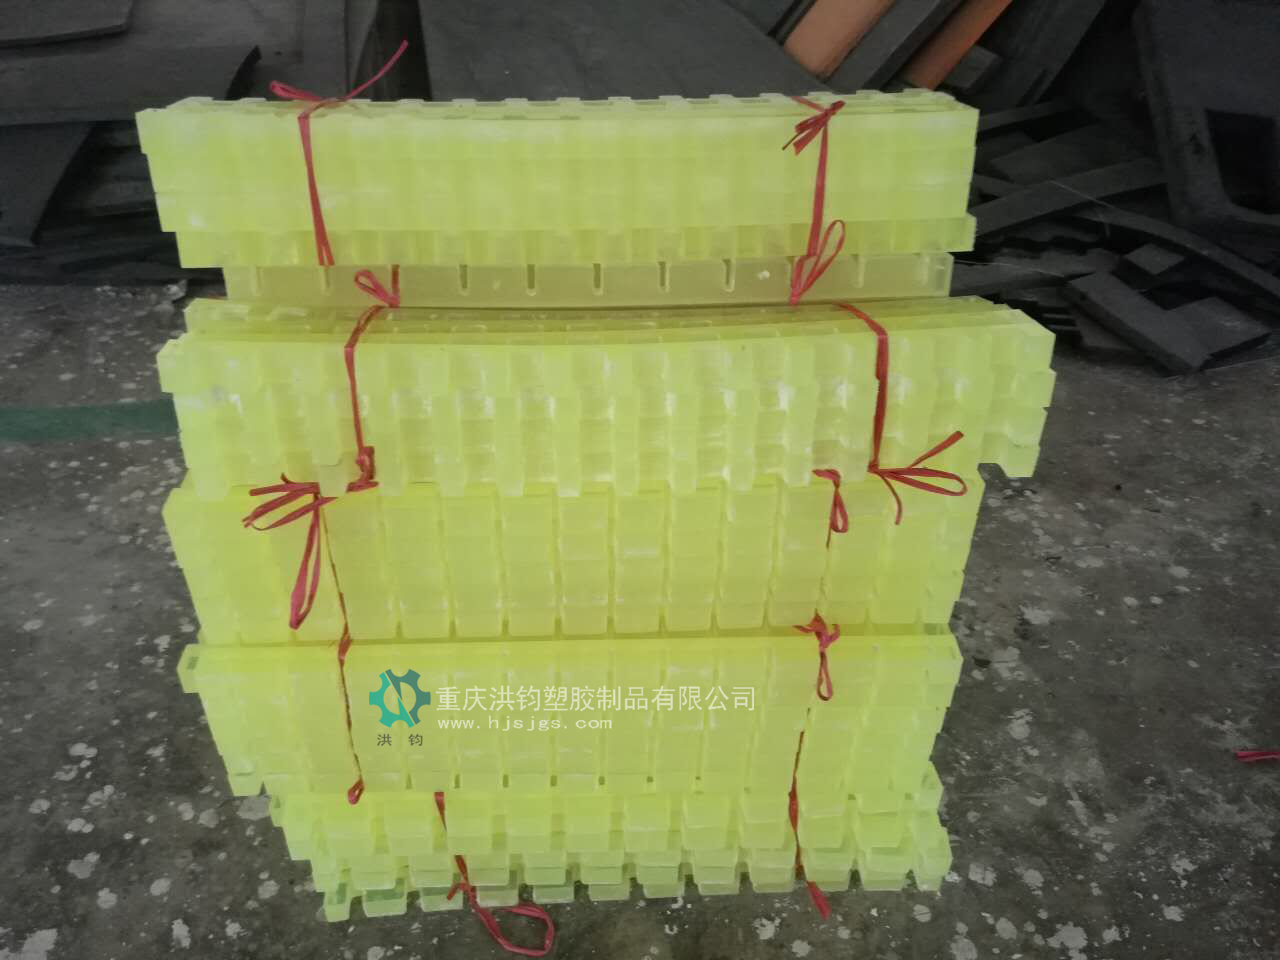 工业塑胶制品采购_工业塑胶工艺品定制-重庆洪钧塑胶制品有限公司